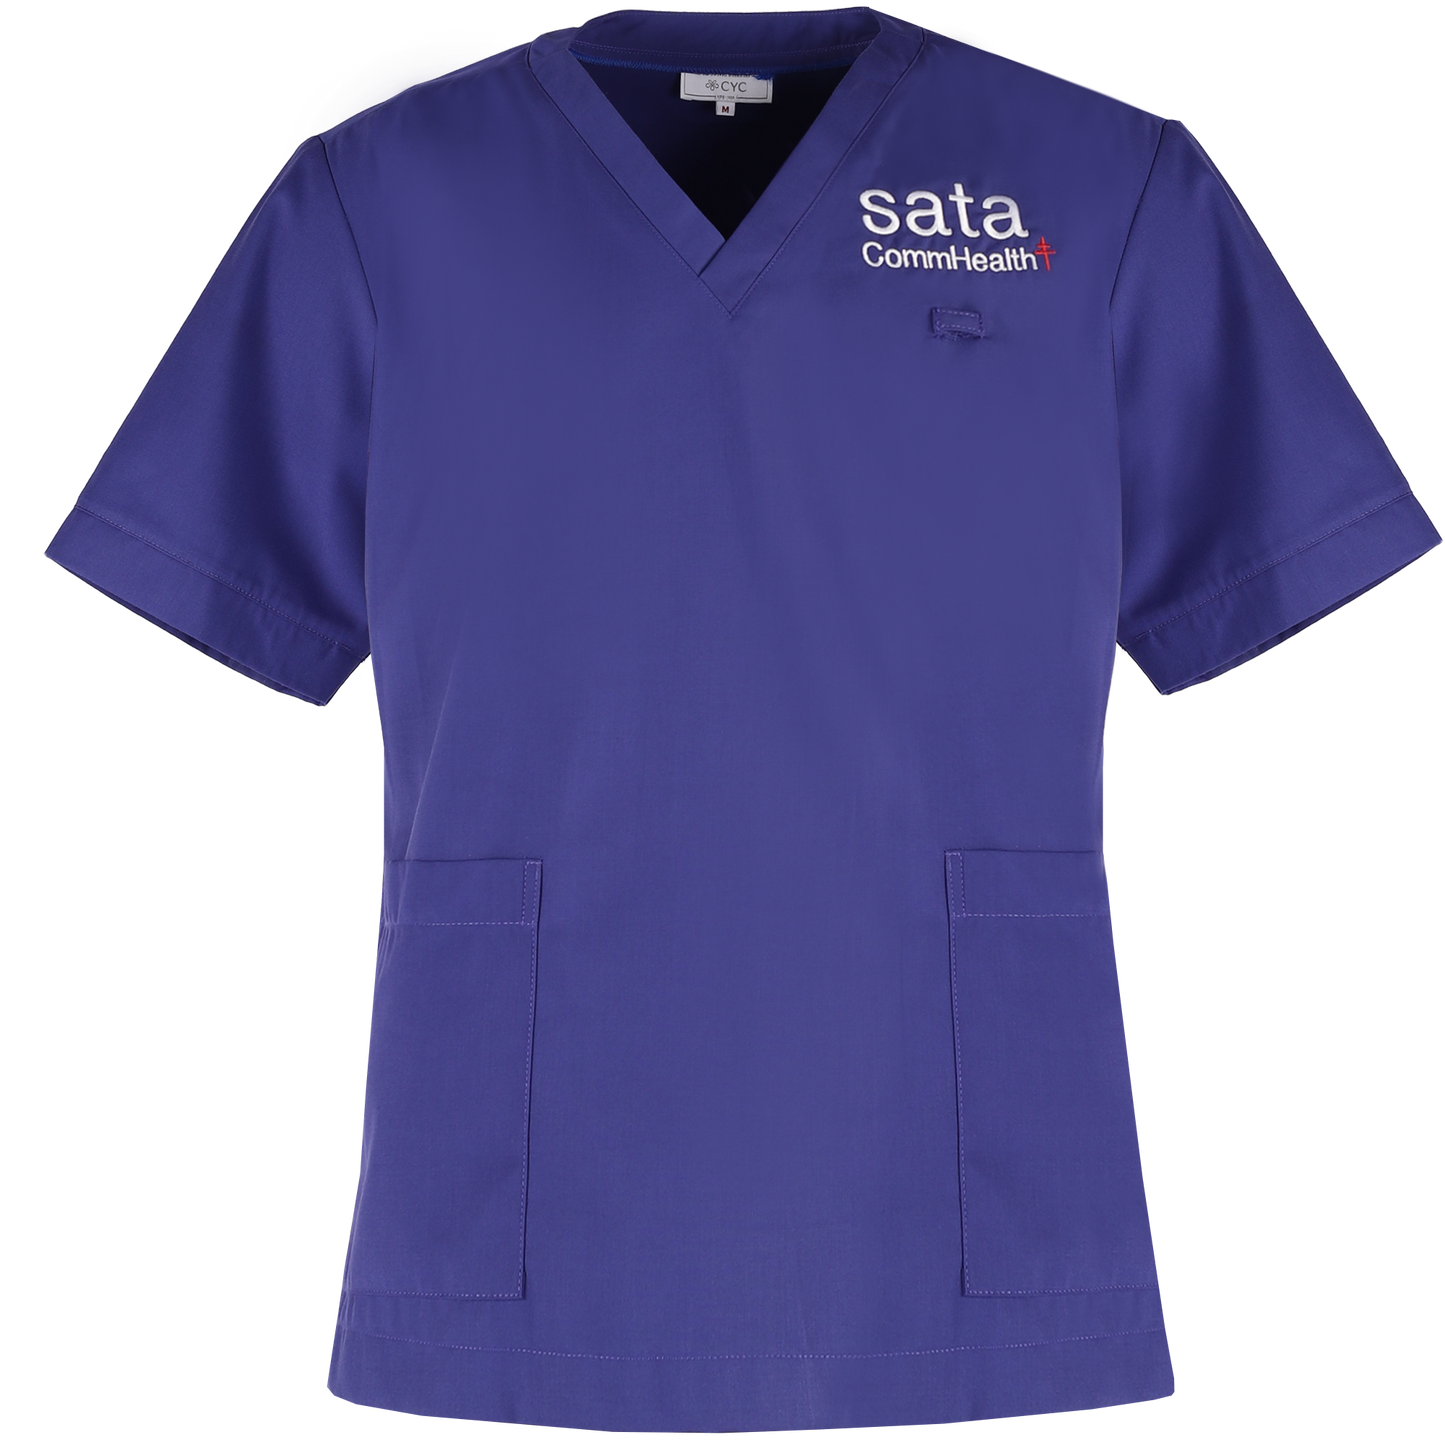 Customised Medical Staff Scrub Top — Hospital amd Clinic Uniforms by CYC